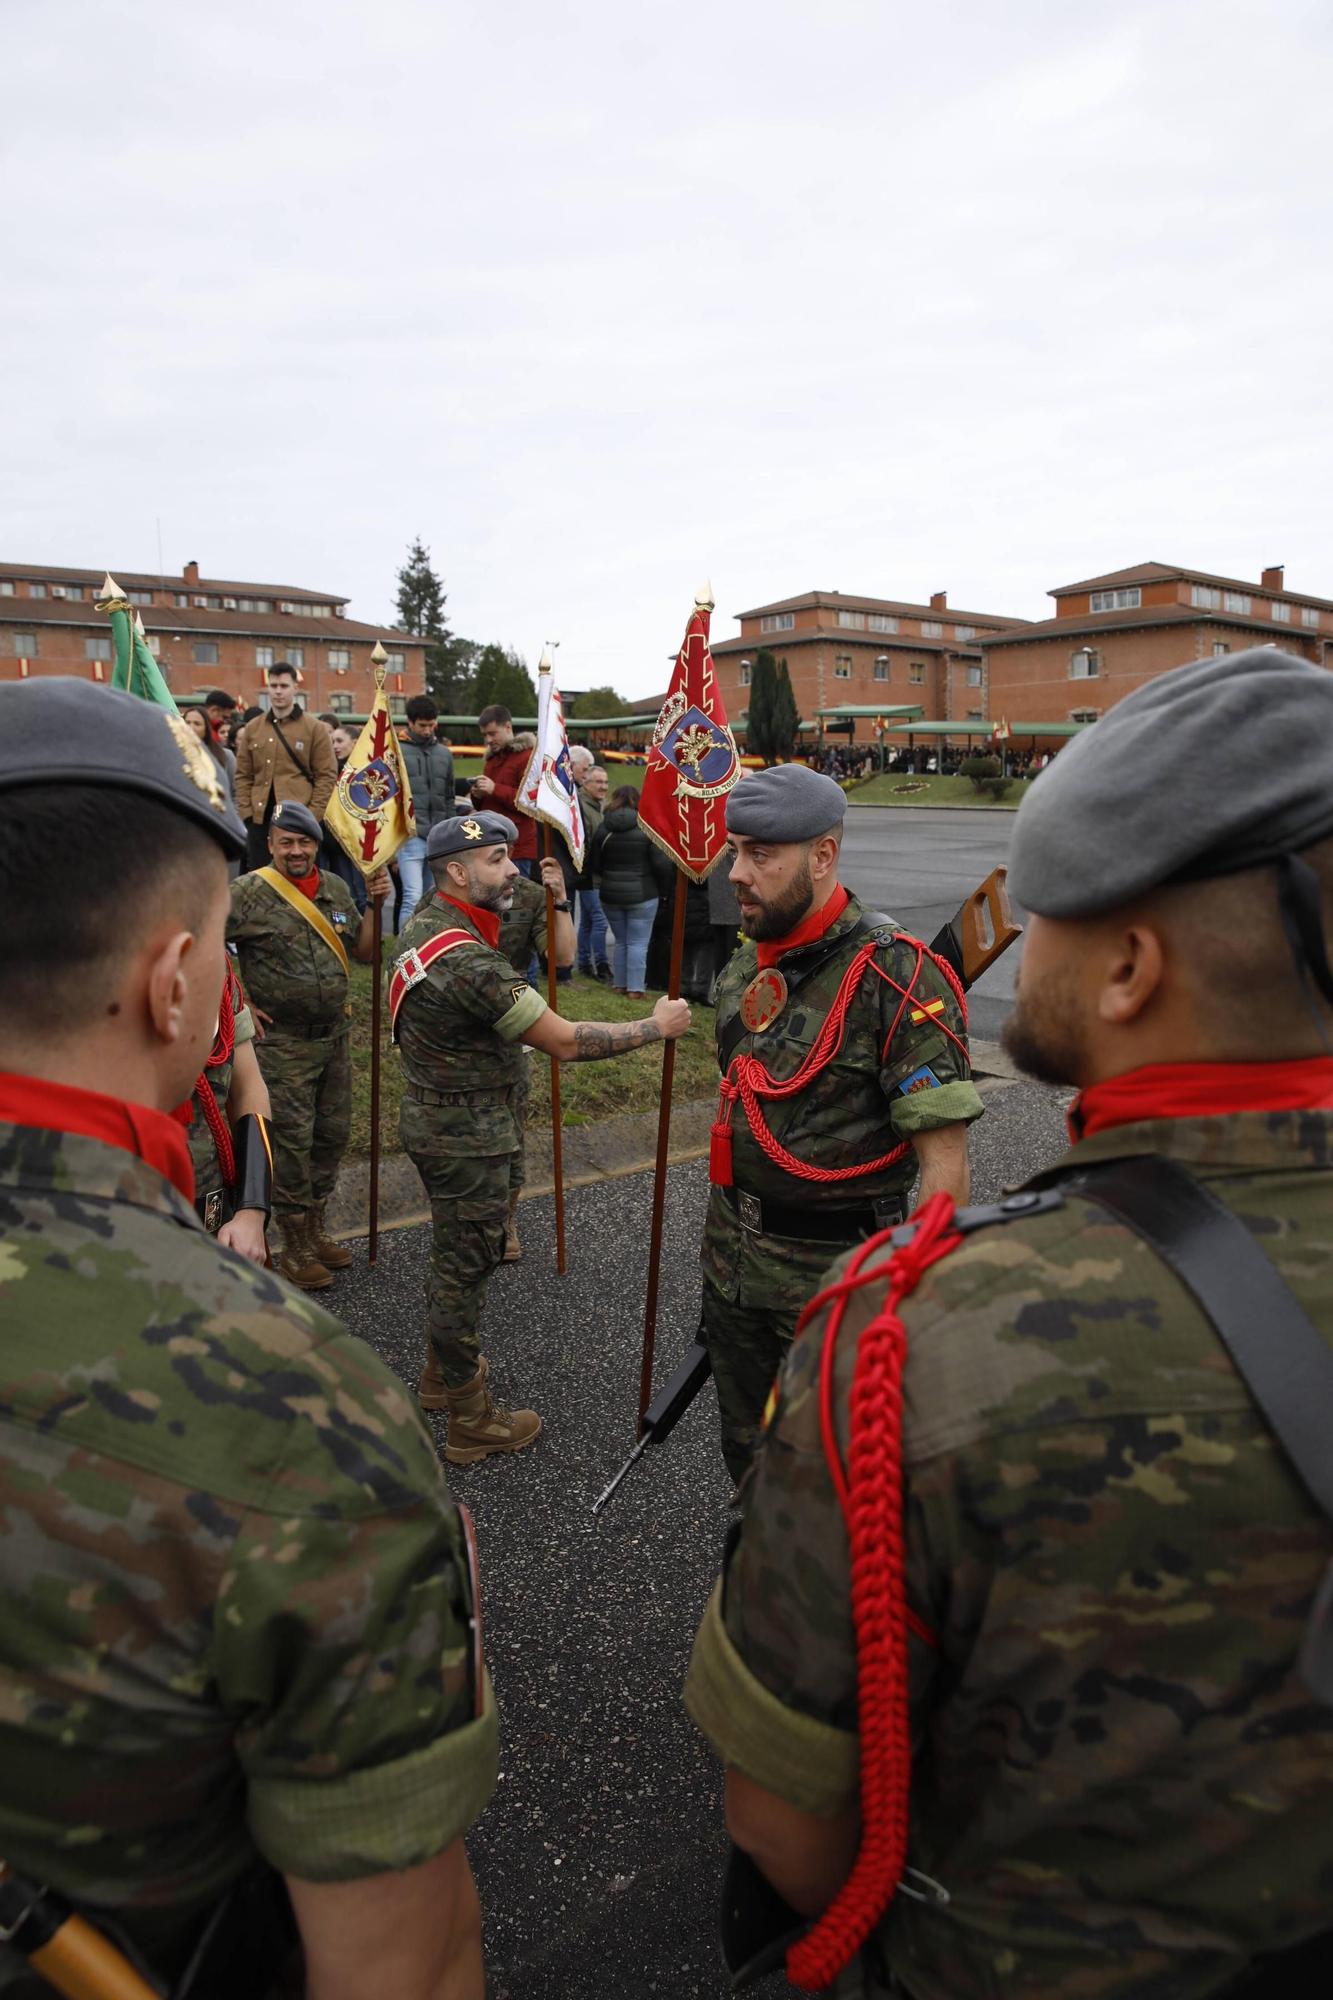 EN IMÁGENES: Desfile militar del regimiento "Príncipe" y fiesta de La Inmaculada en Cabo Noval